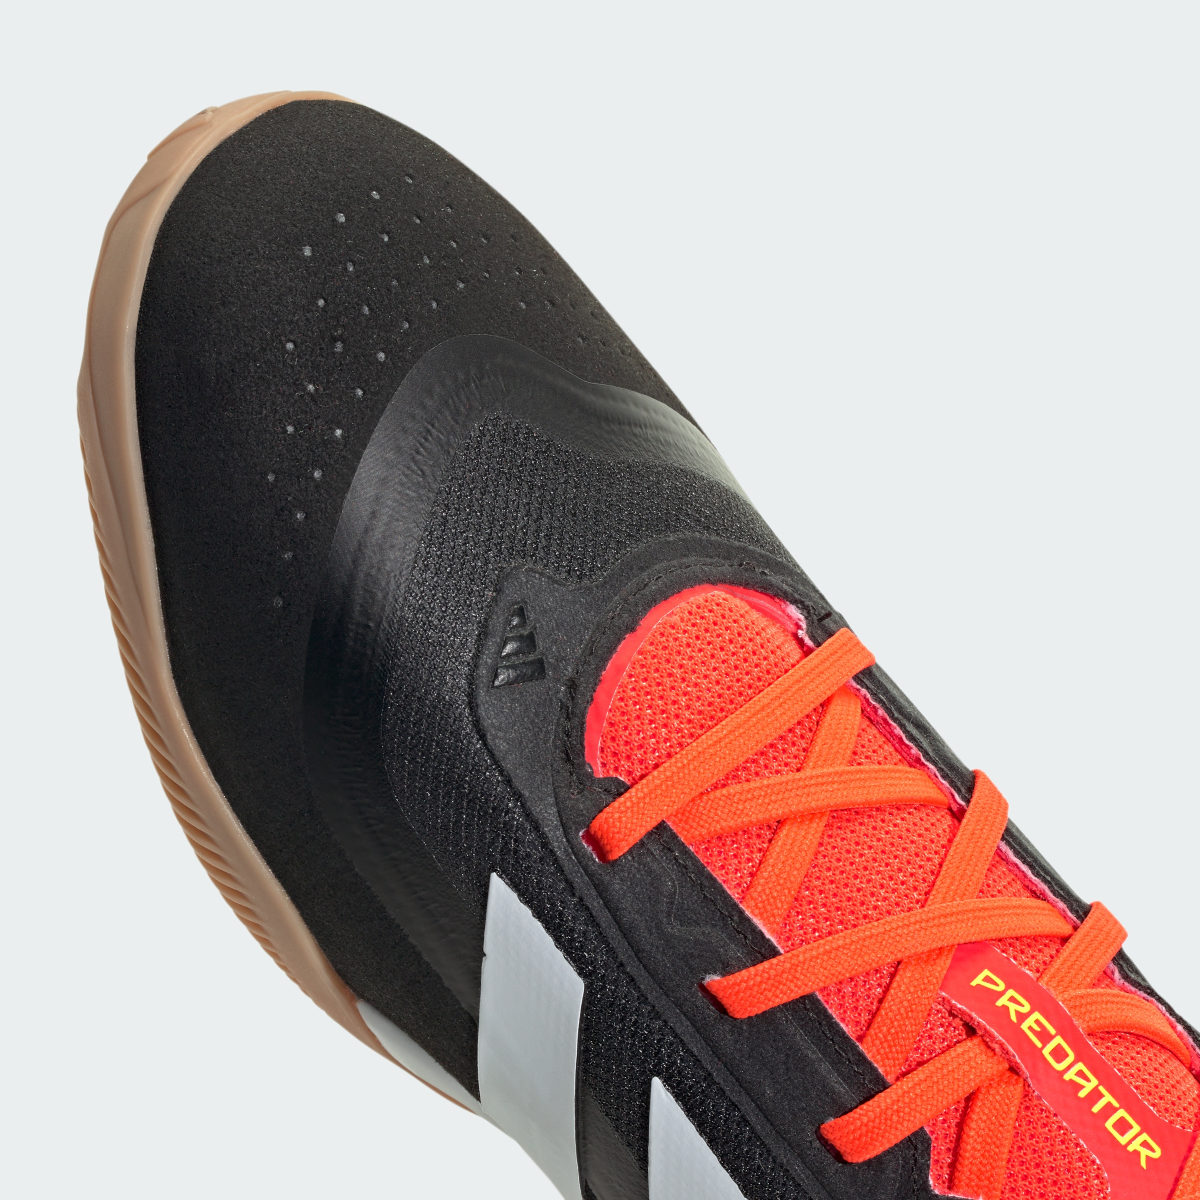 Adidas Predator League Indoor Football Boots. 10